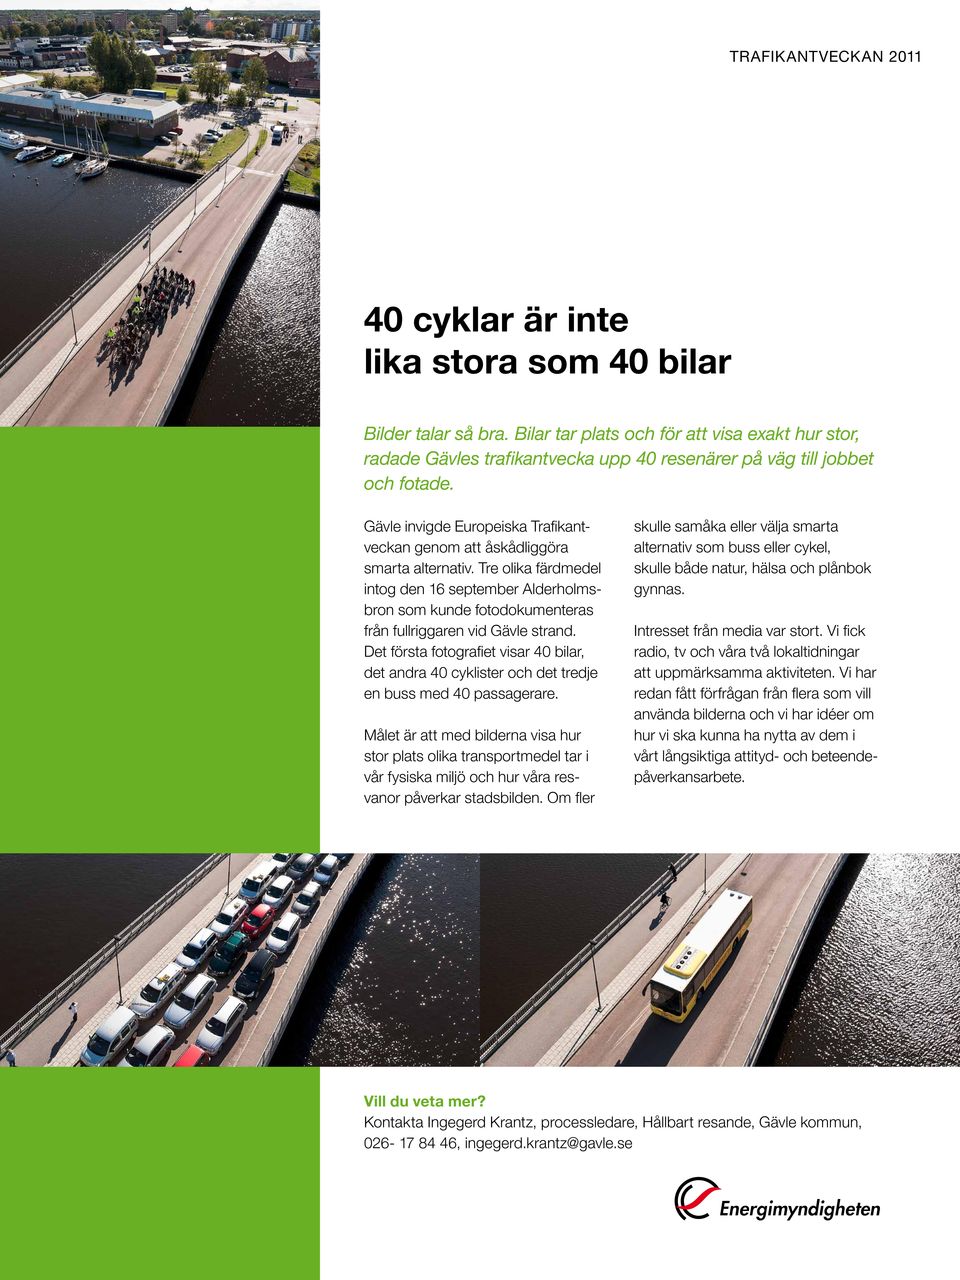 Tre olika färdmedel intog den 16 september Alderholmsbron som kunde fotodokumenteras från fullriggaren vid Gävle strand.